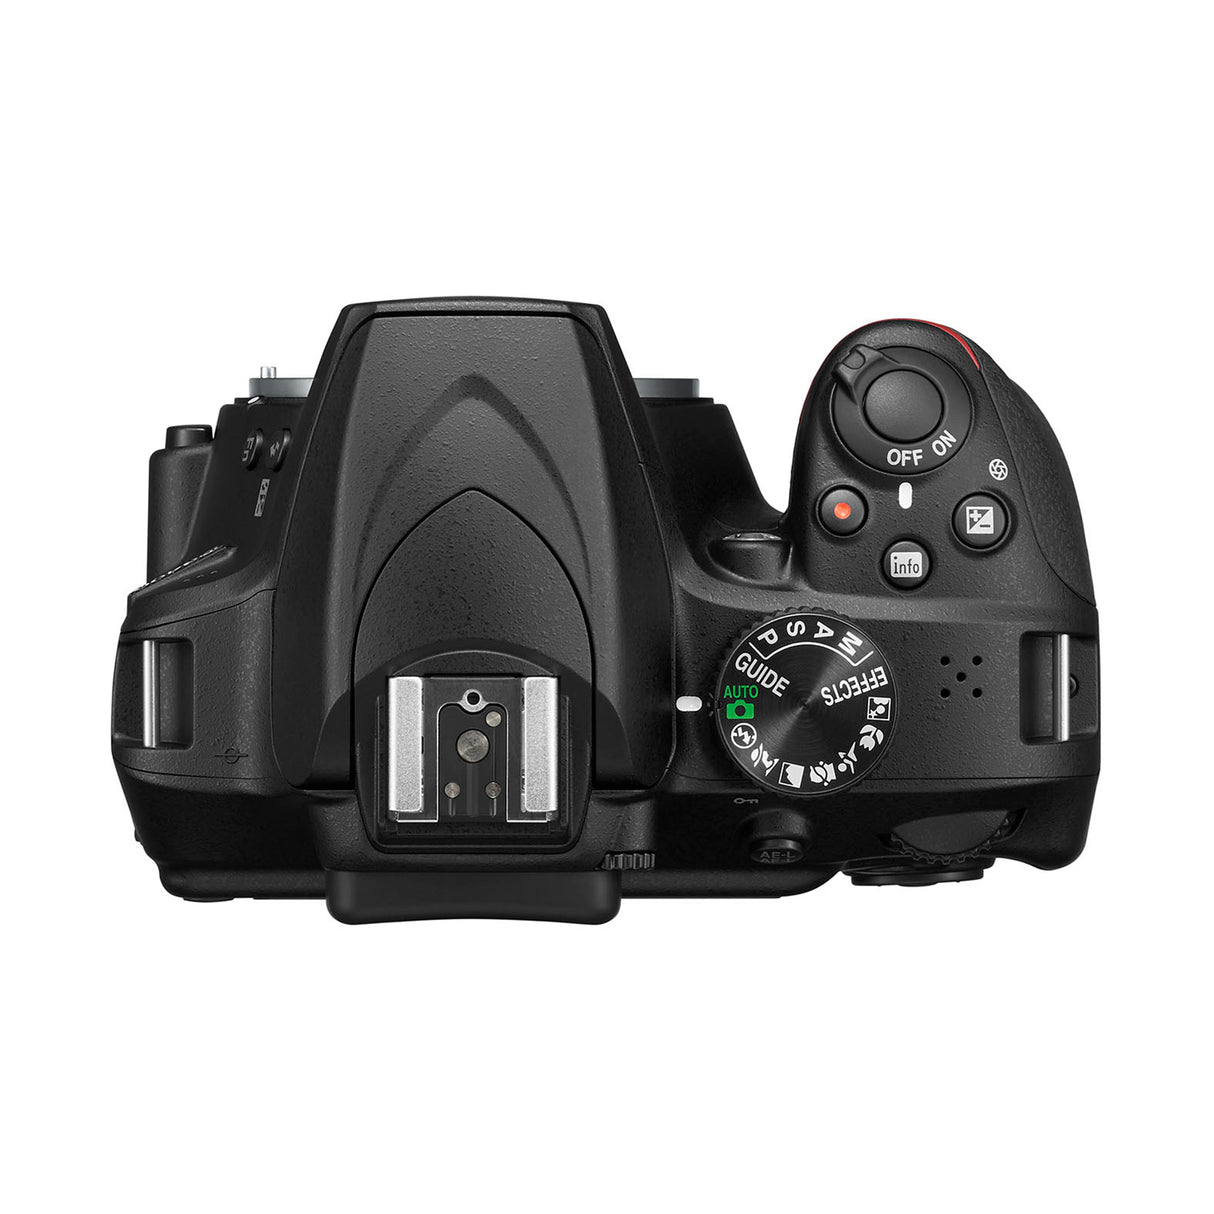 Nikon D3400 DSLR Camera